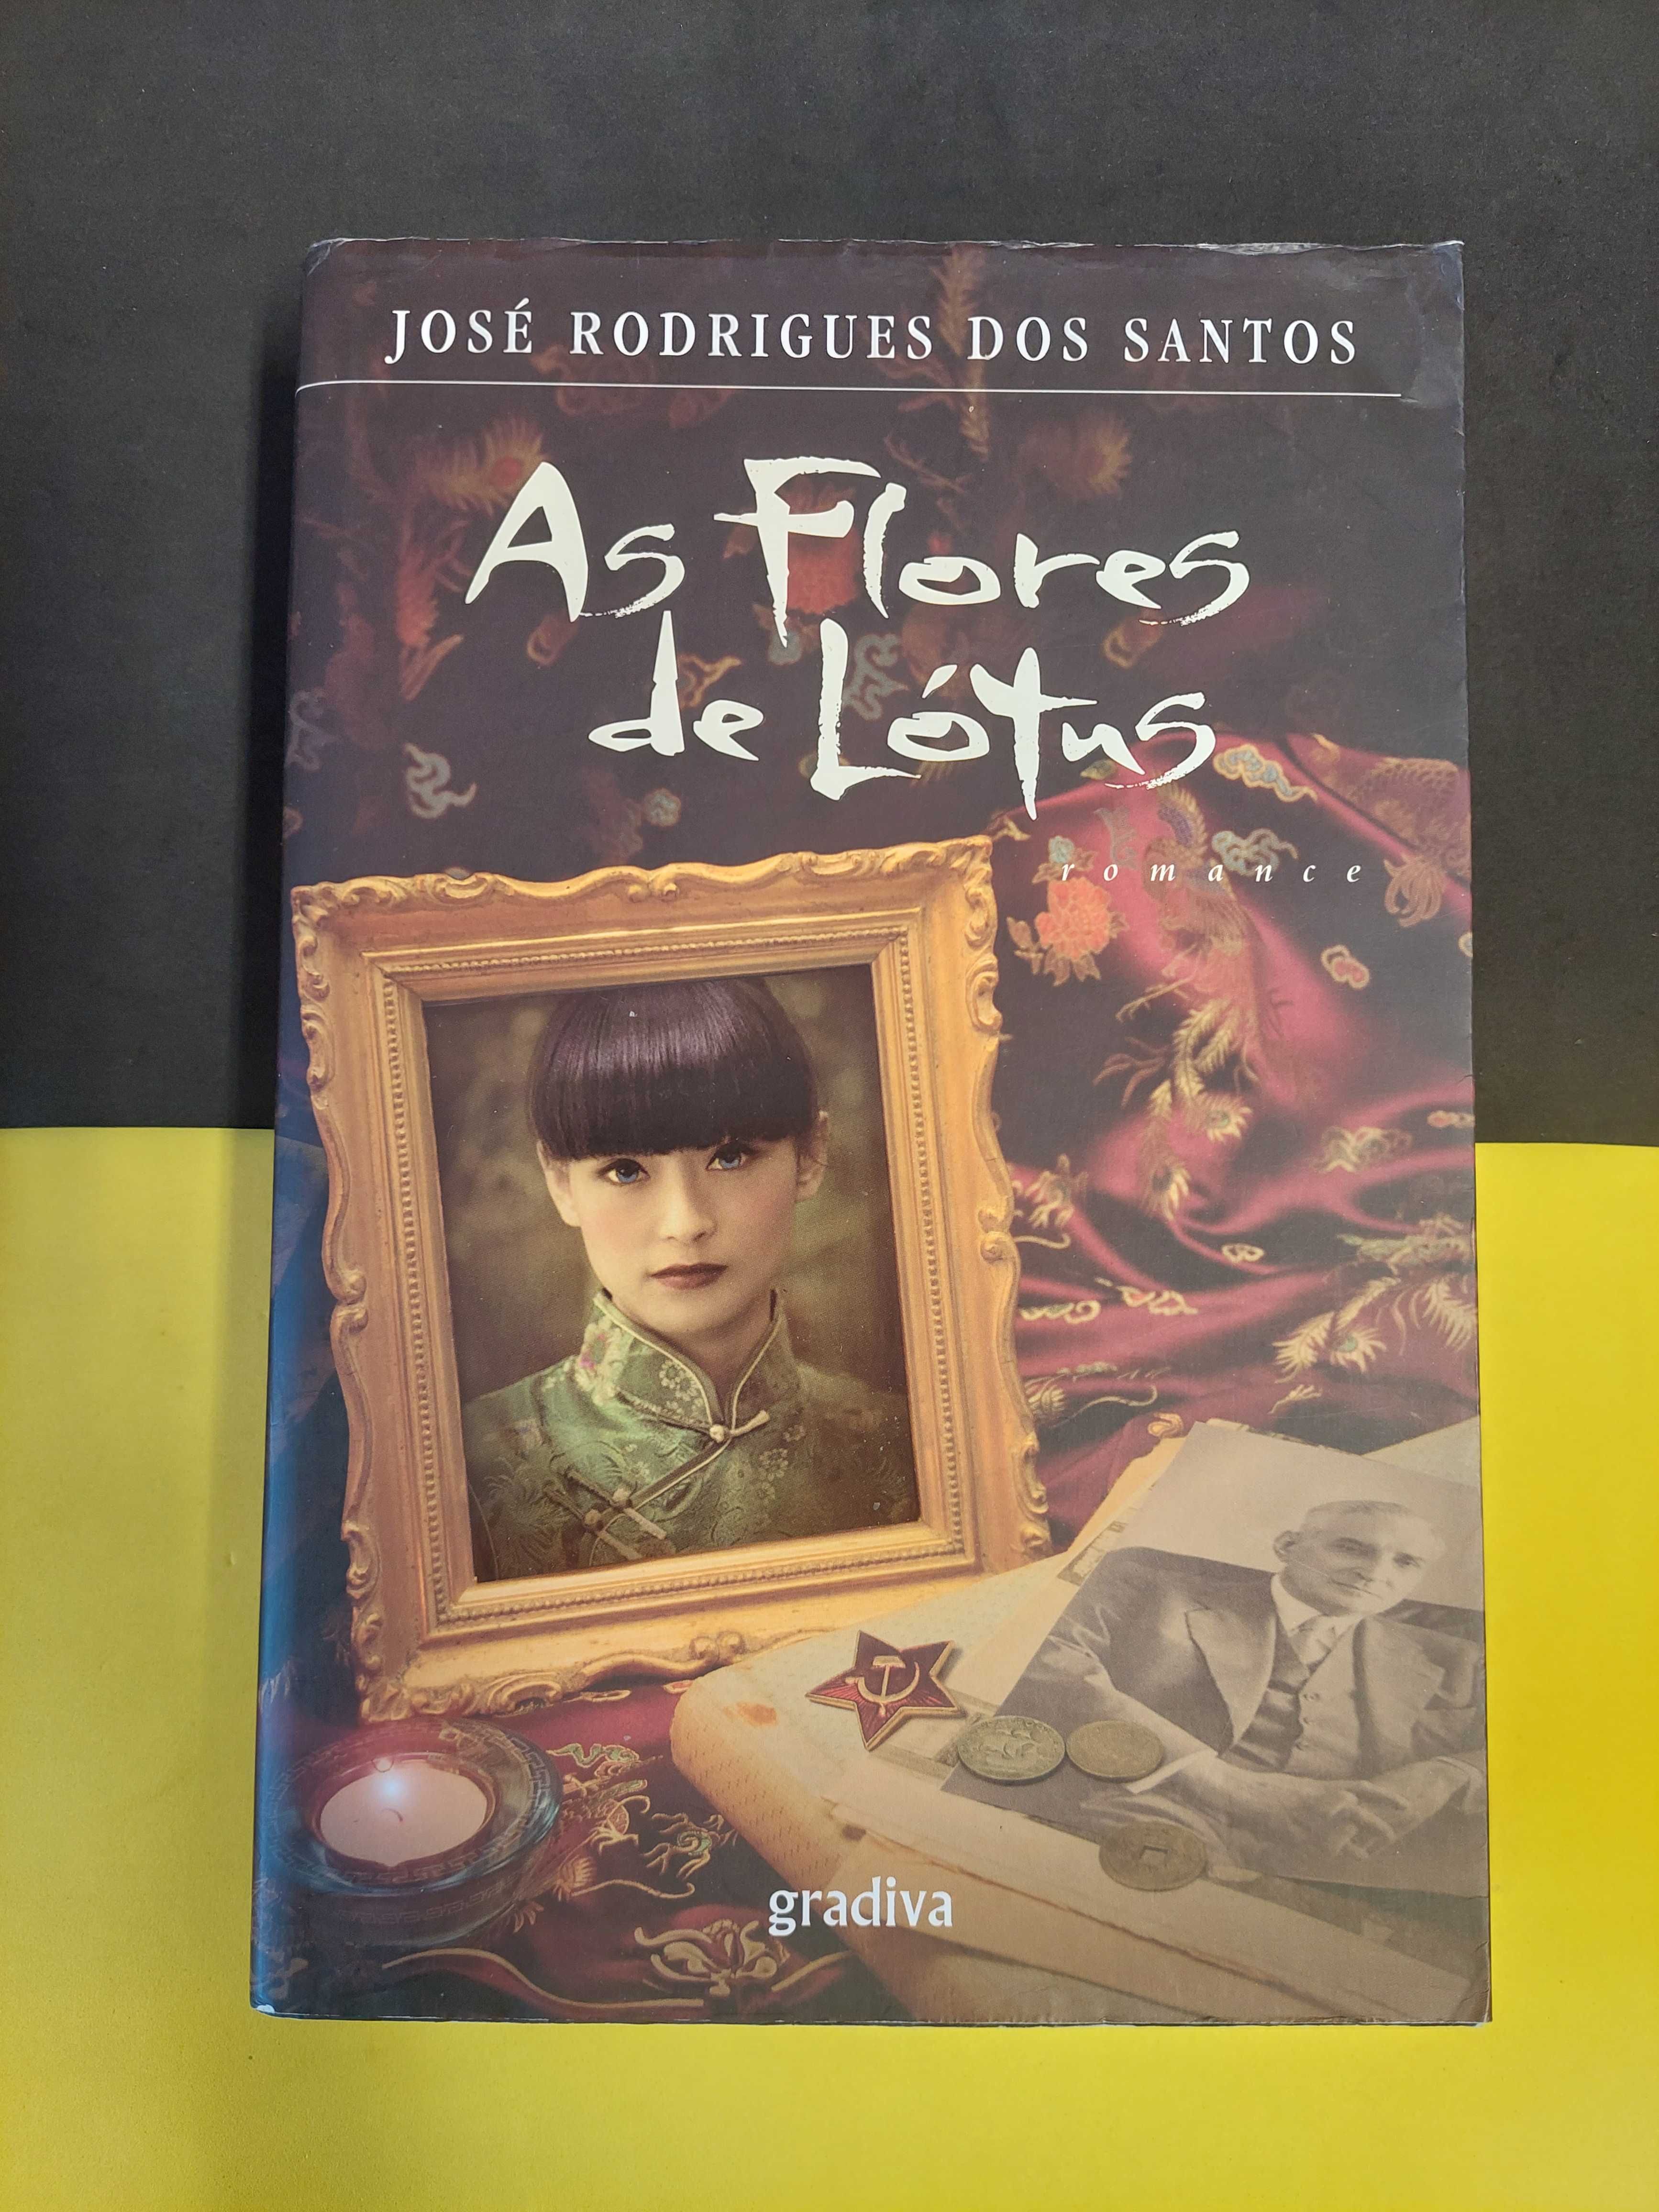 José Rodrigues dos Santos - As flores de Lótus